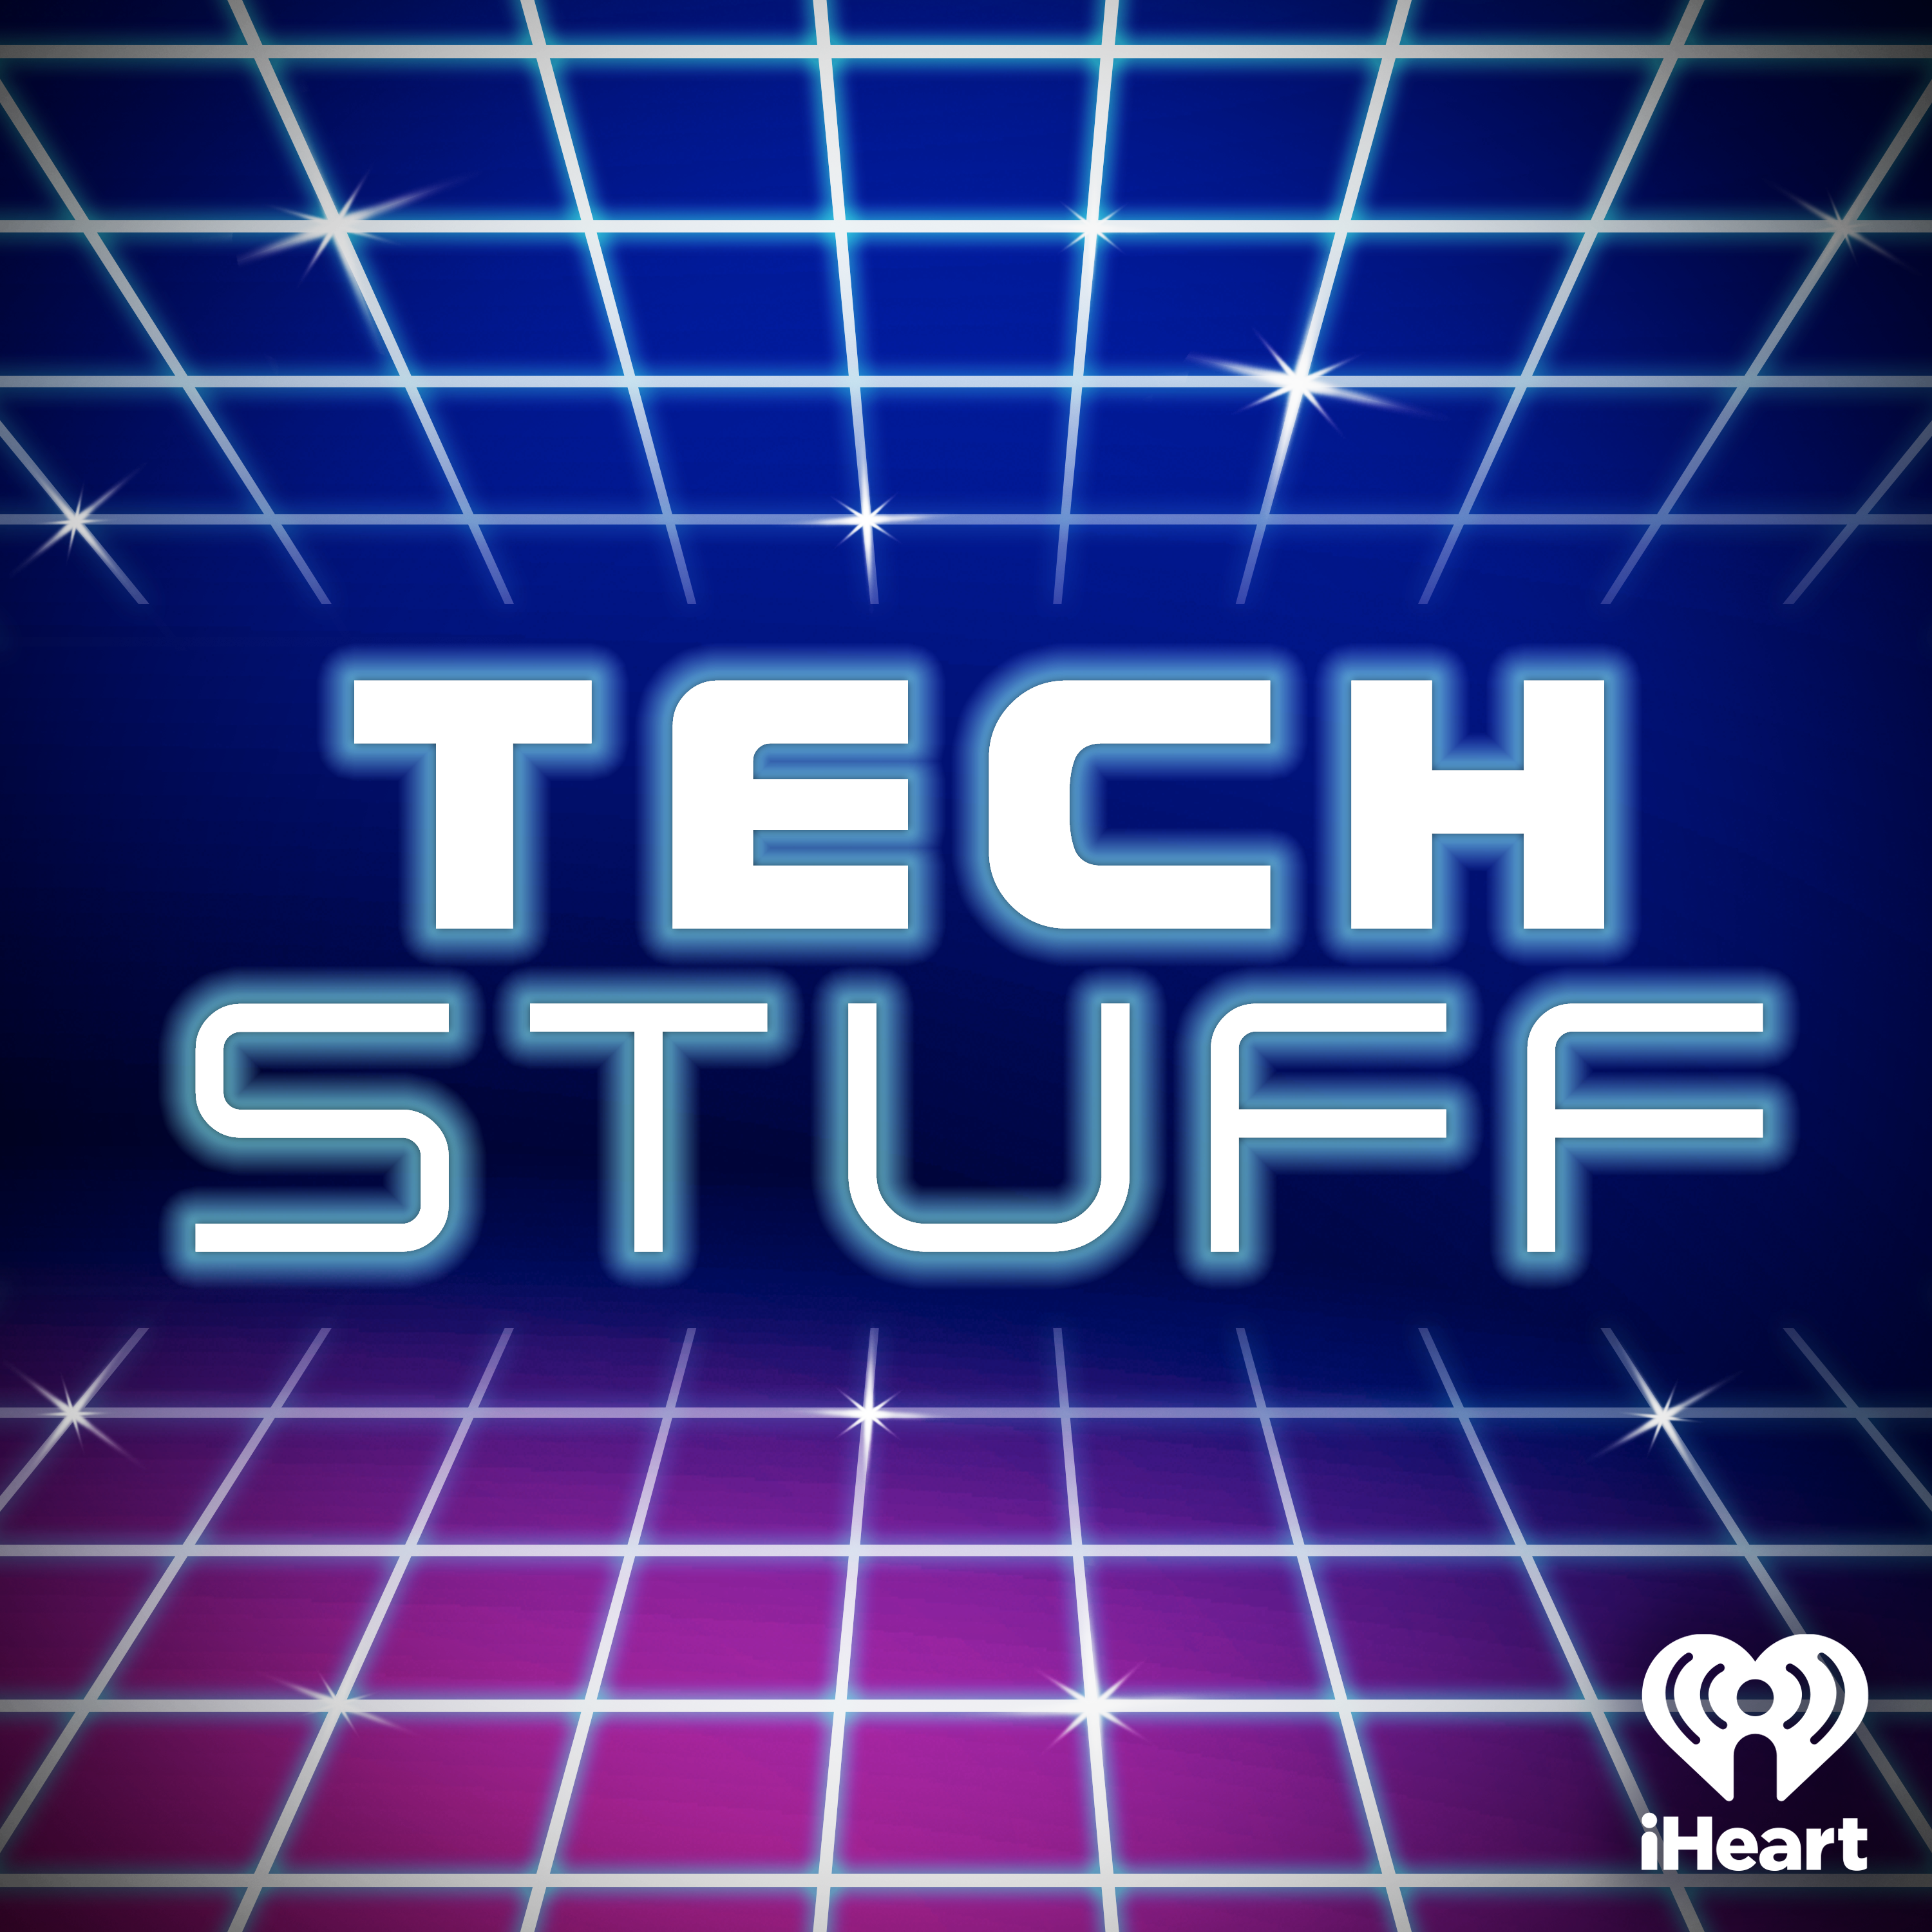 TechStuff Reviews 2016 Part One